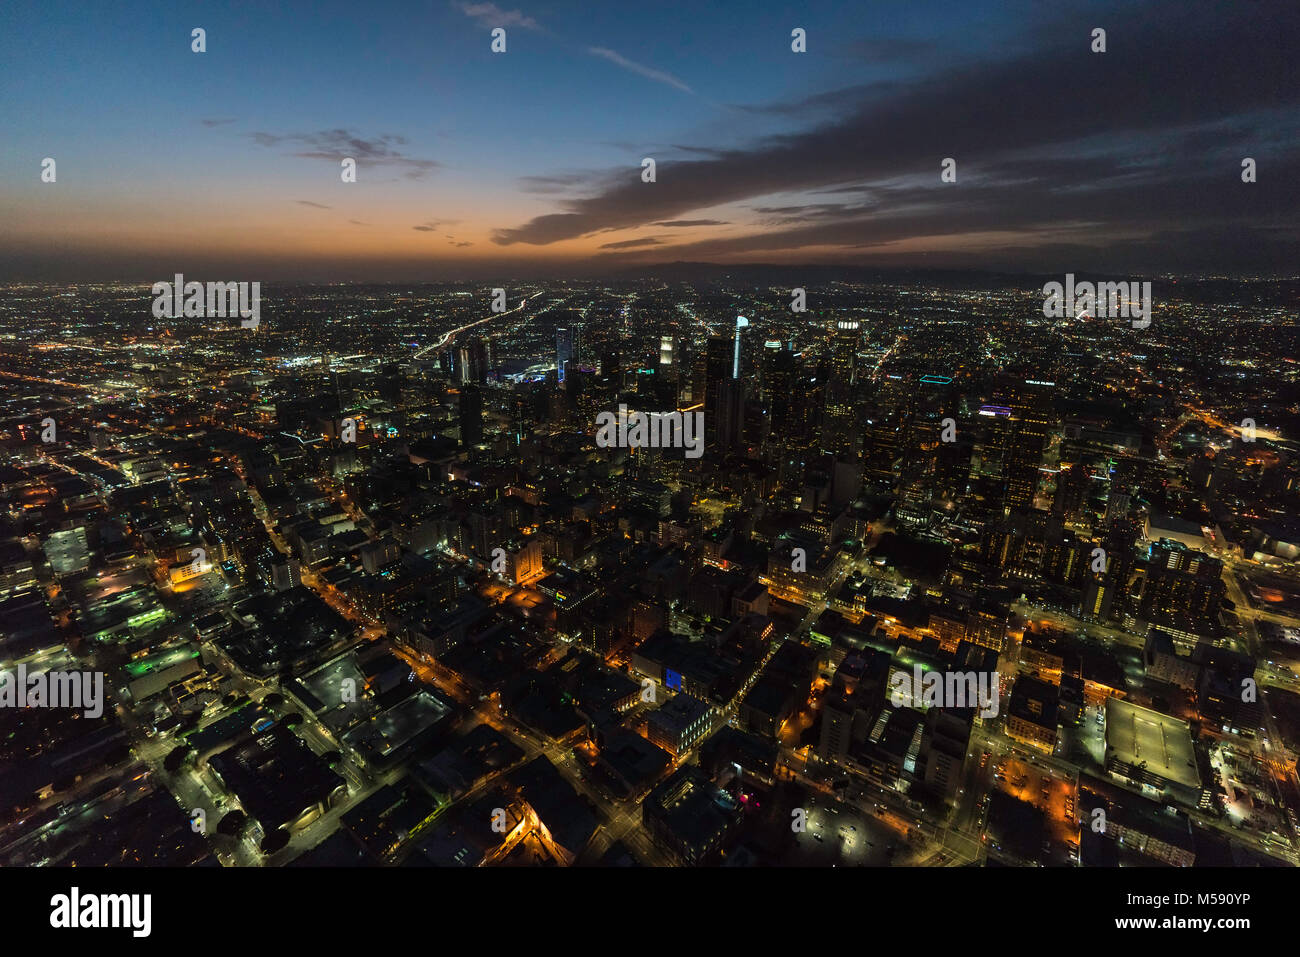 Los Angeles, Californie, USA - 11 Février 2018 : nuit vue aérienne du centre-ville dans les rues et bâtiments dans le sud de la Californie. Banque D'Images